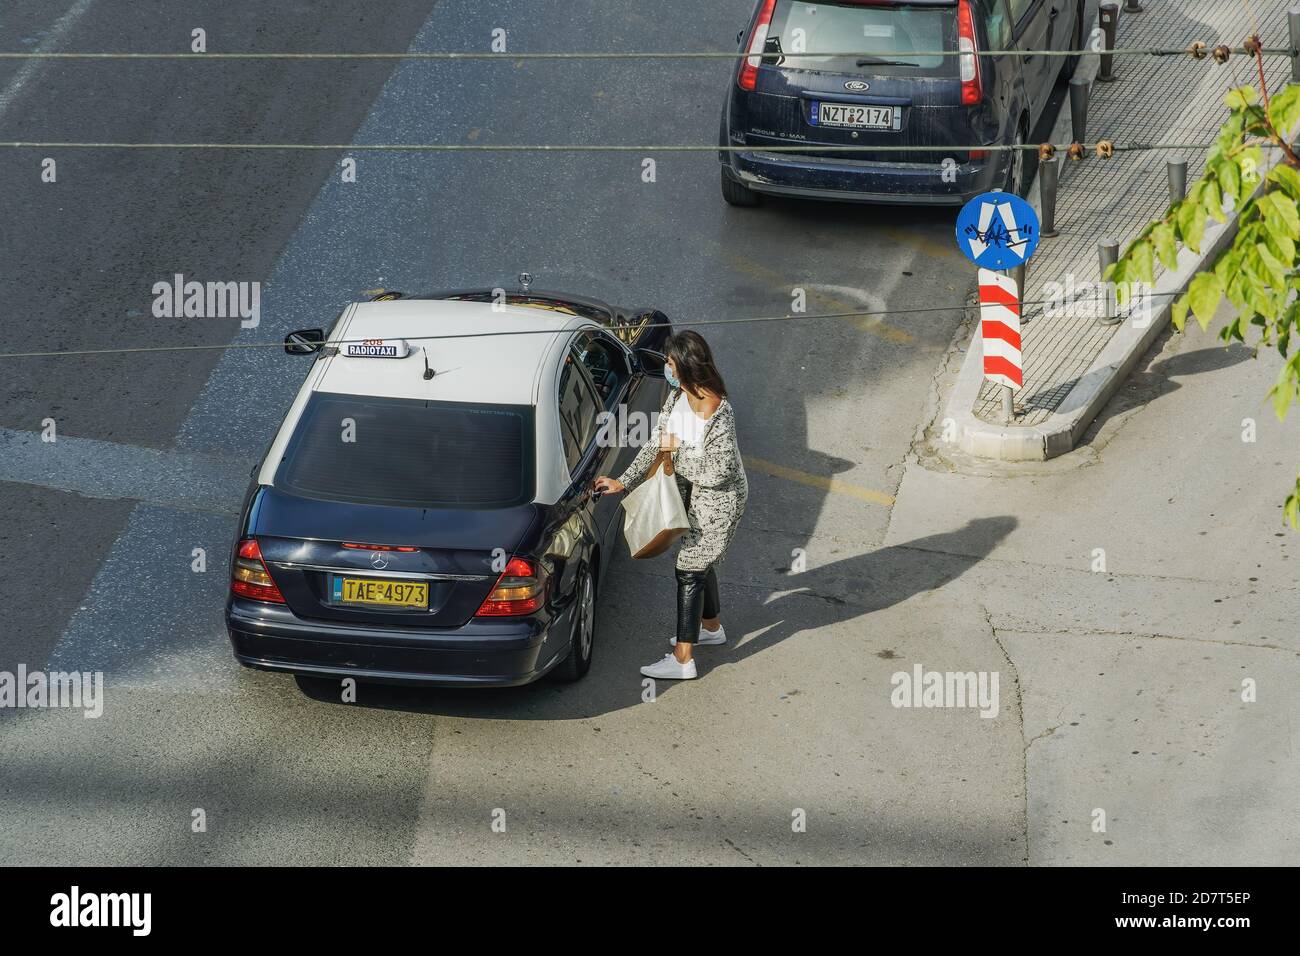 Donna con maschera covid-19 pronta ad entrare in taxi. Una donna non identificata con protezione facciale che entra in un taxi blu e bianco su una strada pubblica a Salonicco, Grecia. Foto Stock